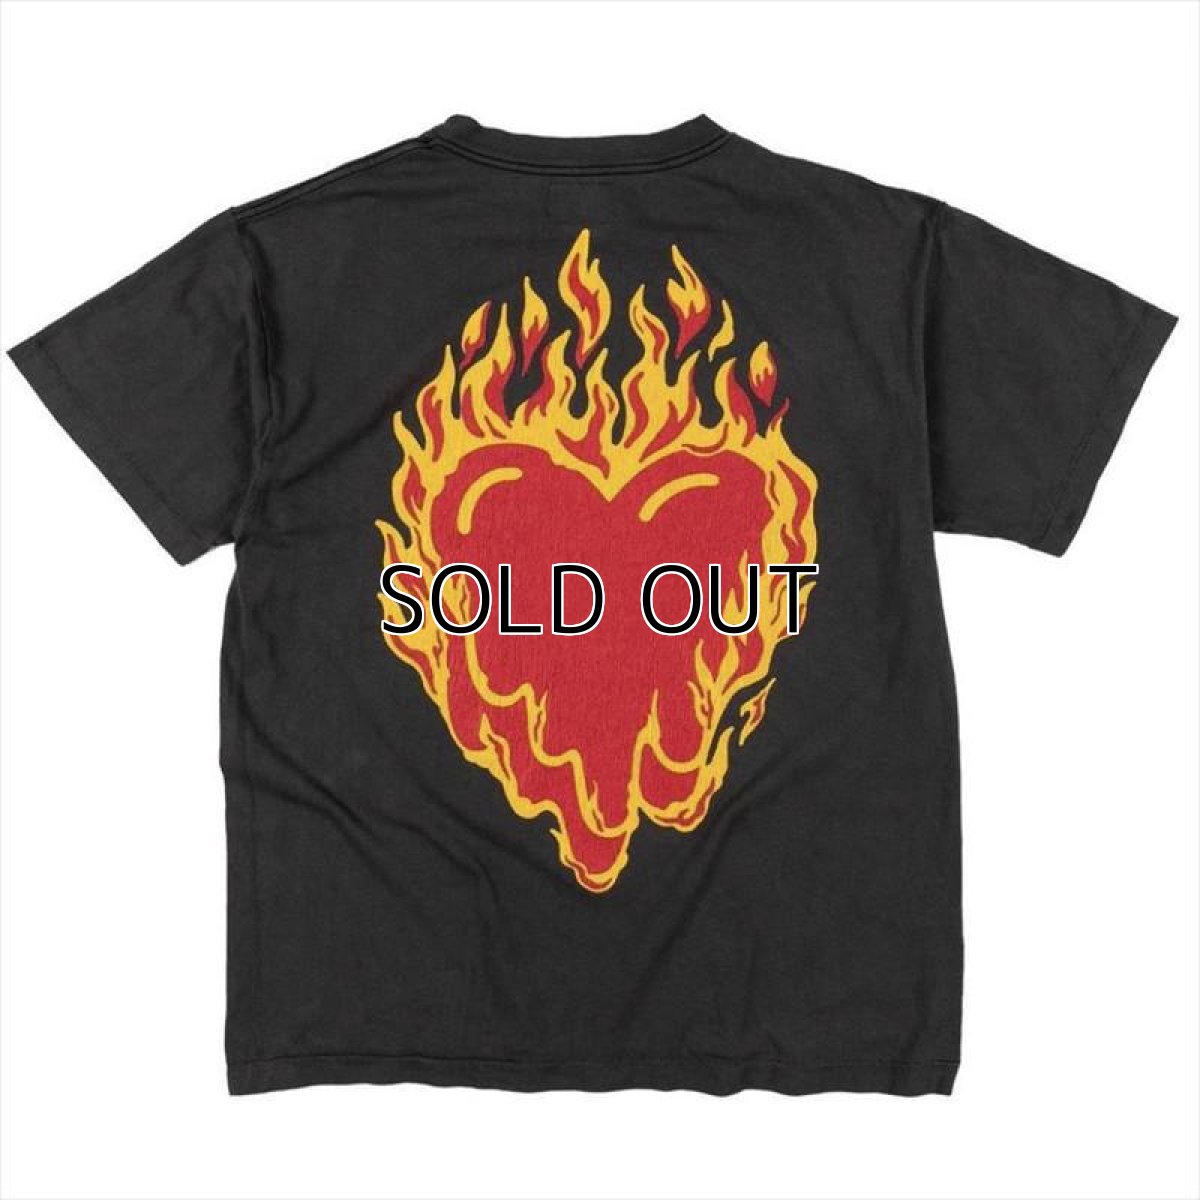 画像1: EMOTIONALLY UNAVAILABLE Hearts On Fire T-Shirt (1)